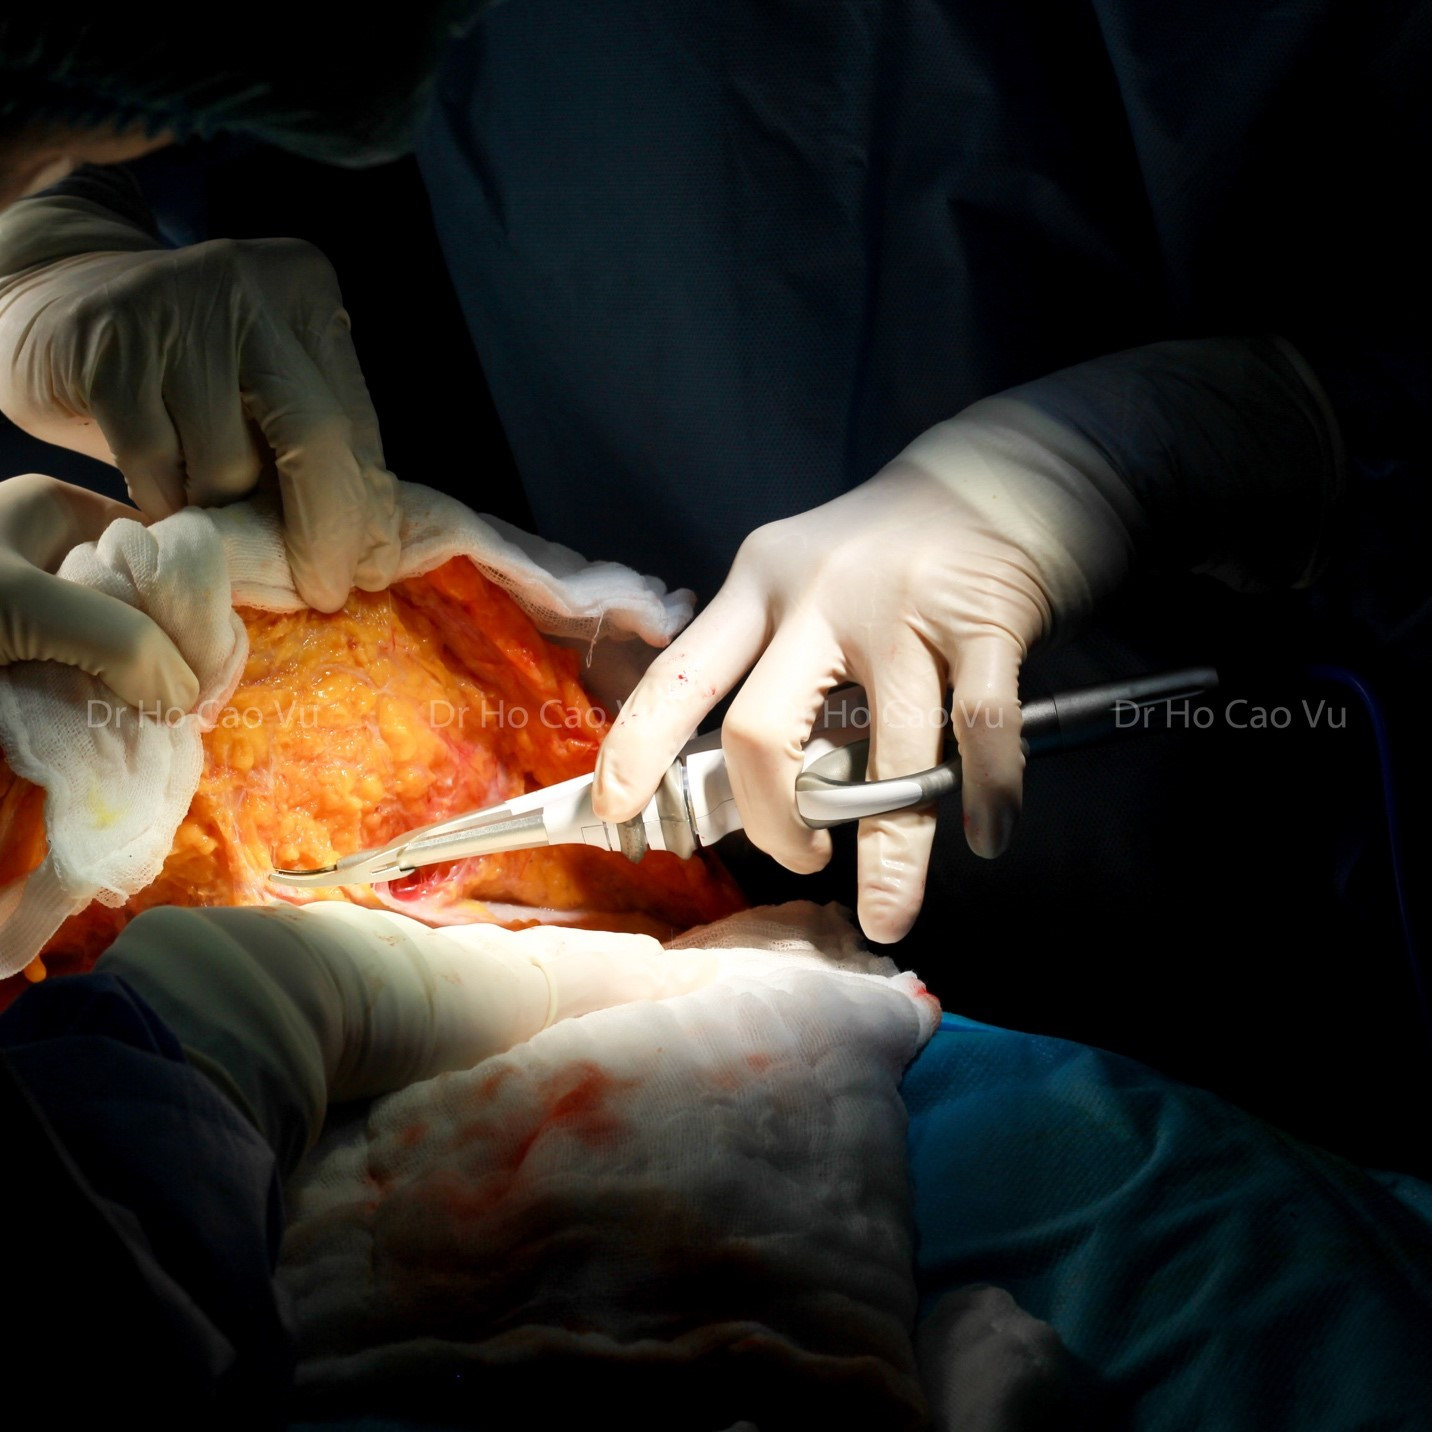 Bác sĩ chia sẻ lưu ý khi cùng lúc phẫu thuật tạo hình thành bụng, nâng ngực